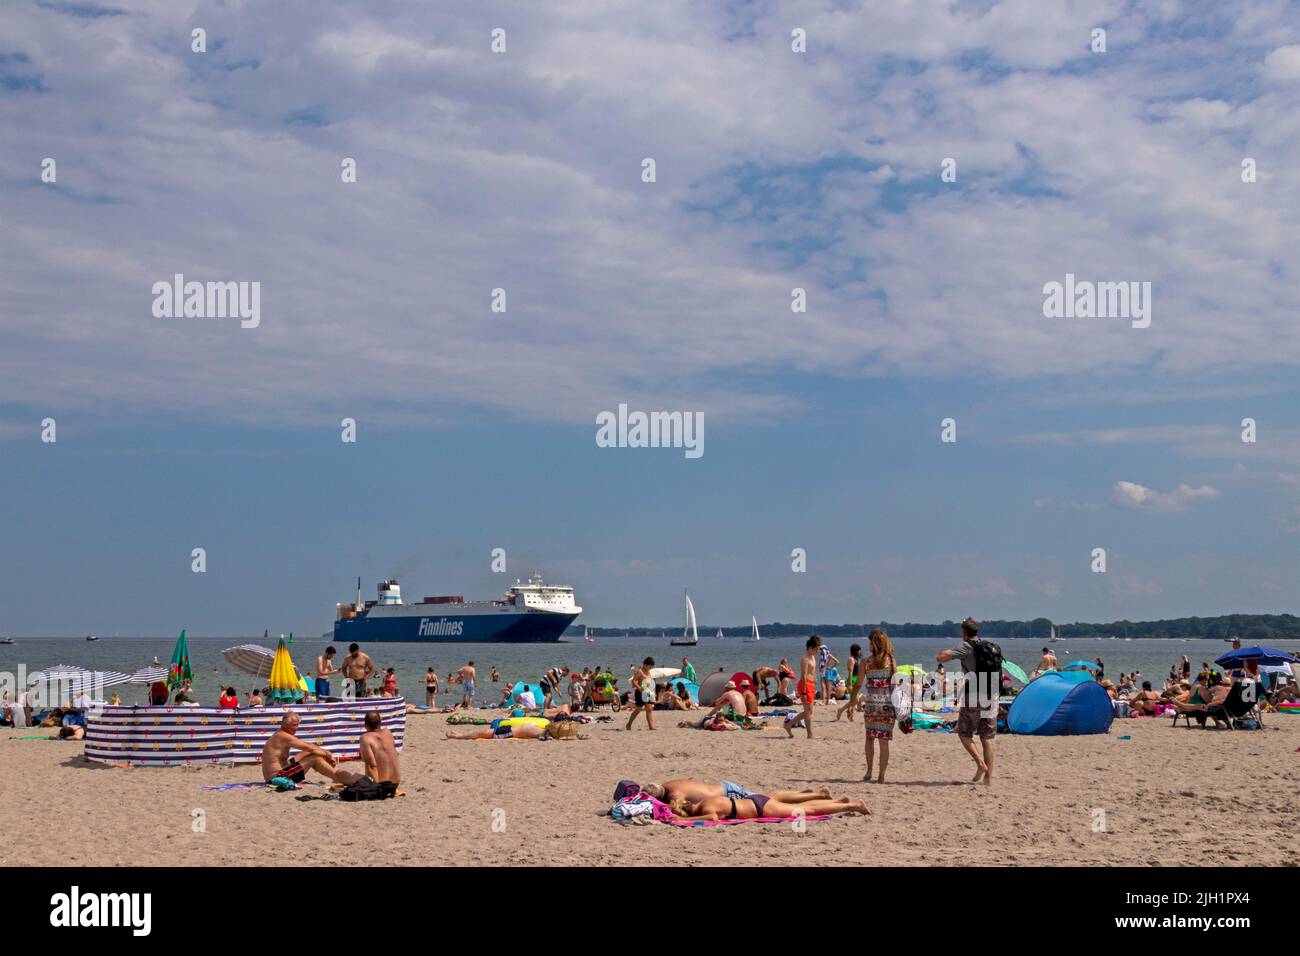 Parasols, beach shades, Finnlines Ferry, beach, Travemünde, Lübeck, Schleswig-Holstein, Germany Stock Photo